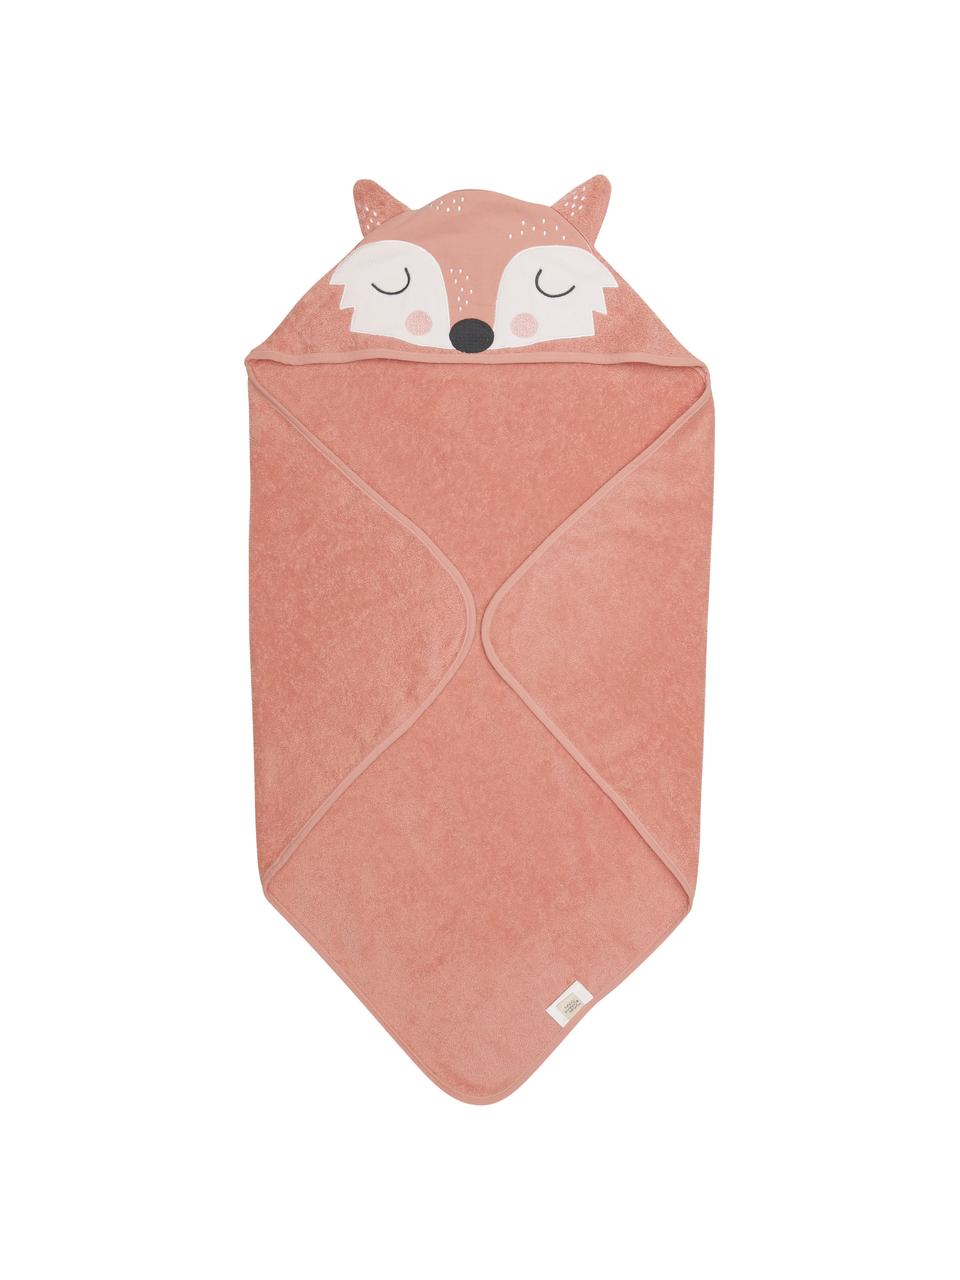 Babyhanddoek Fox van biokatoen, 100% biokatoen, Roze, wit, zwart, B 80 x L 80 cm